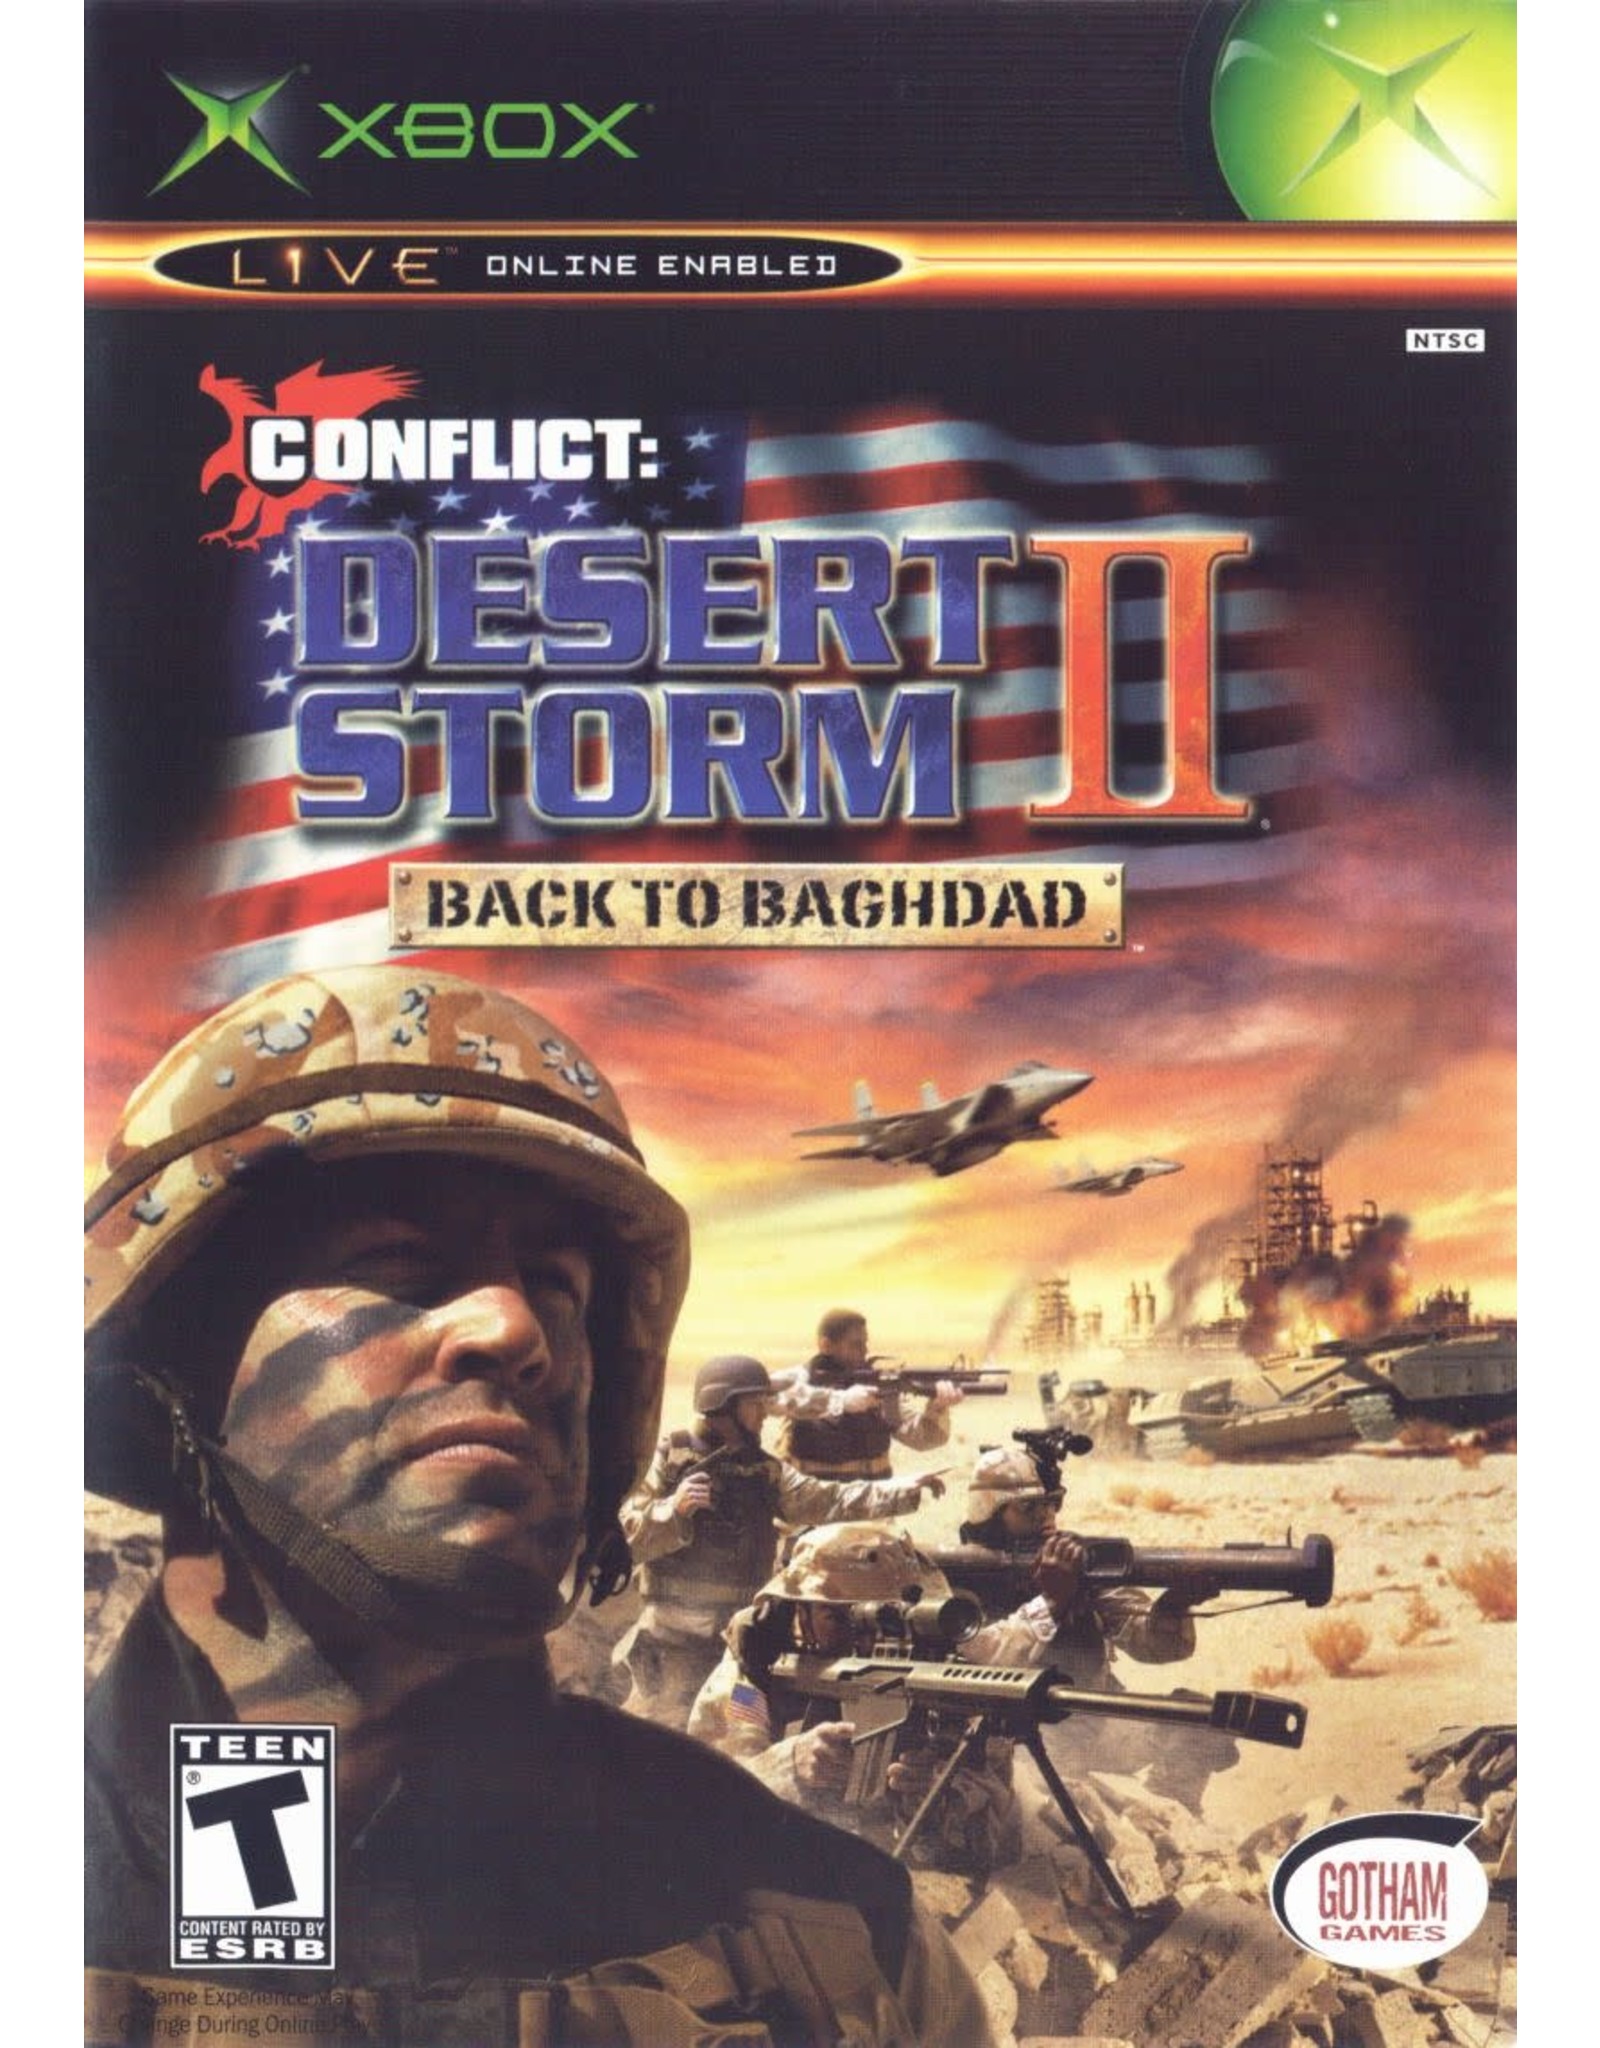 Xbox Conflict Desert Storm 2 (CiB)